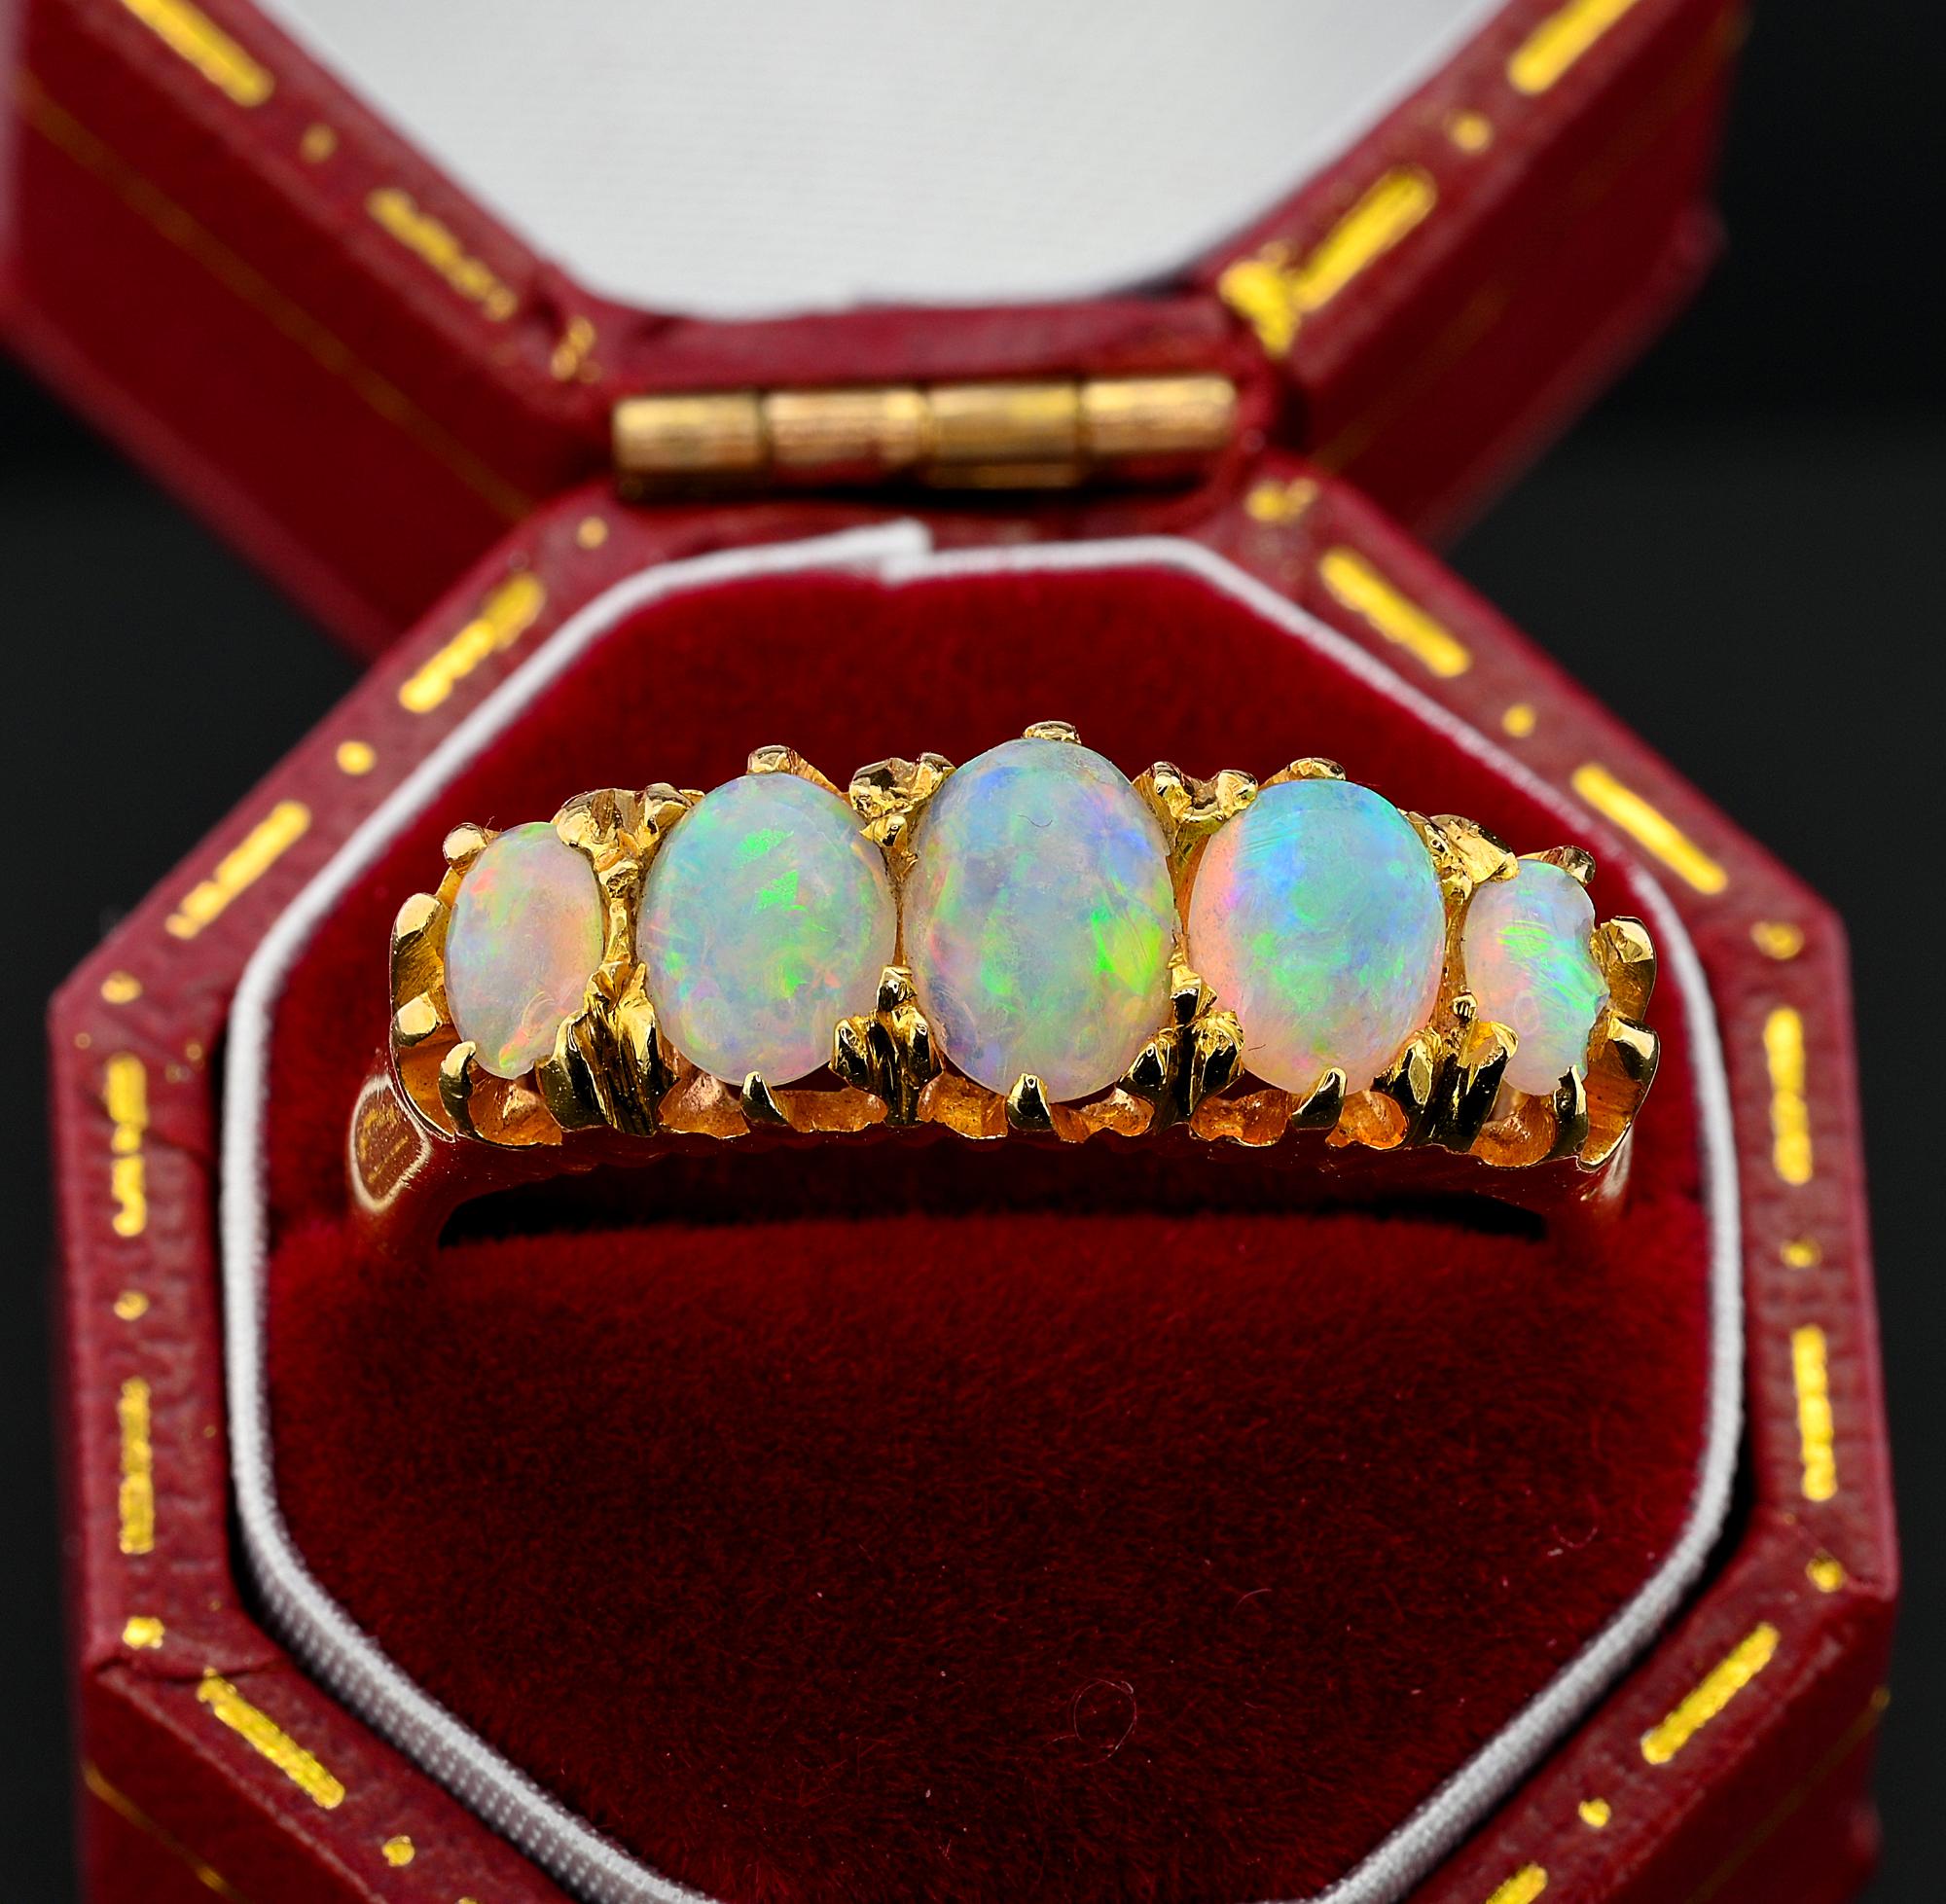 Cette magnifique bague d'époque victorienne a été fabriquée à la main en or massif 18 carats, d'origine anglaise.
La belle monture à griffes met en valeur une sélection d'opales ovales légèrement graduées, estimées à 2,0 carats. Elles présentent un